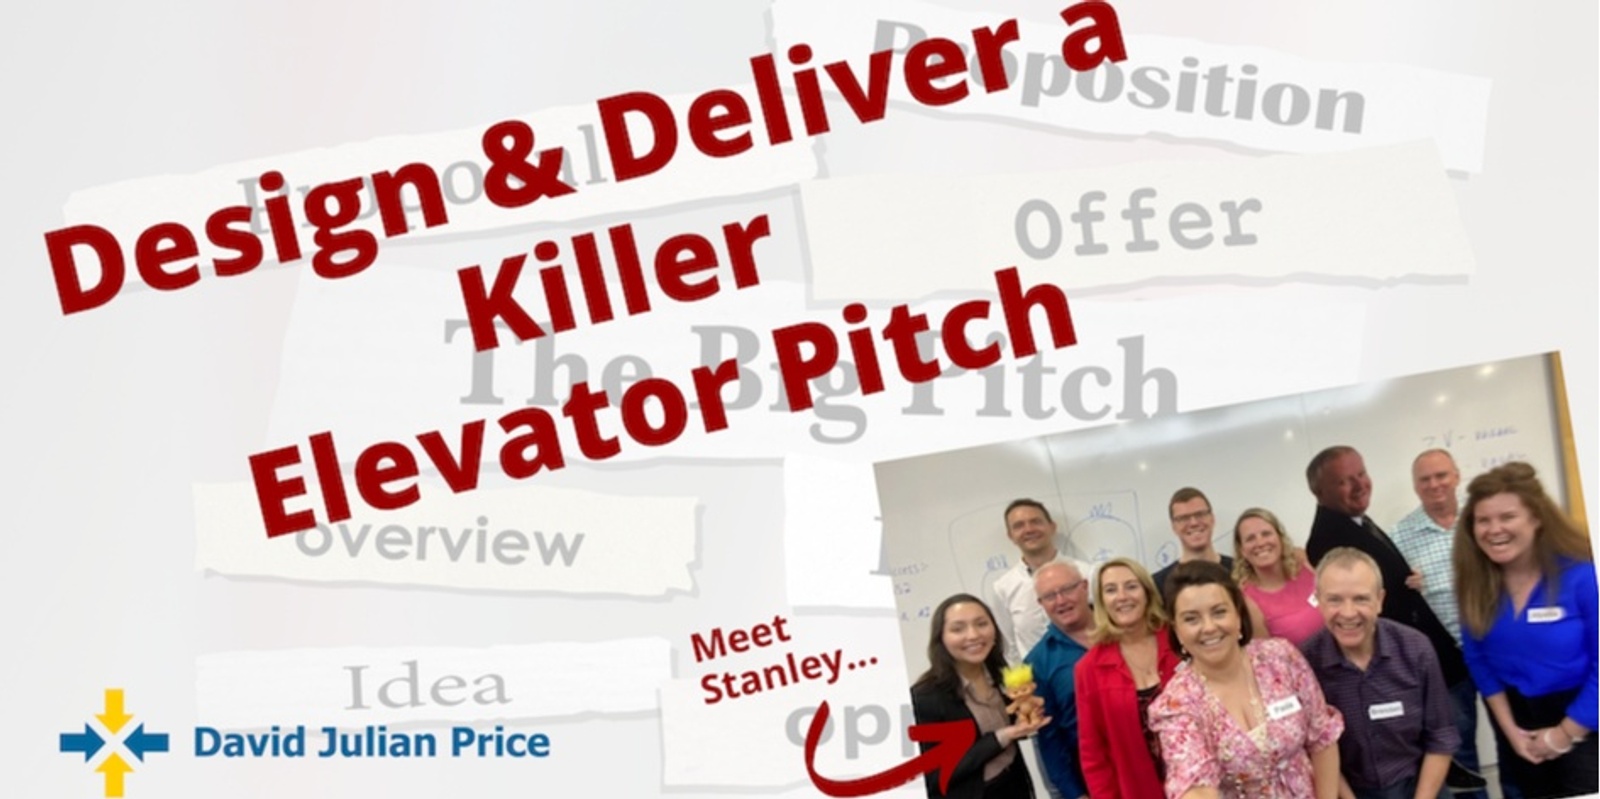 Design & Deliver a Killer Elevator Pitch 